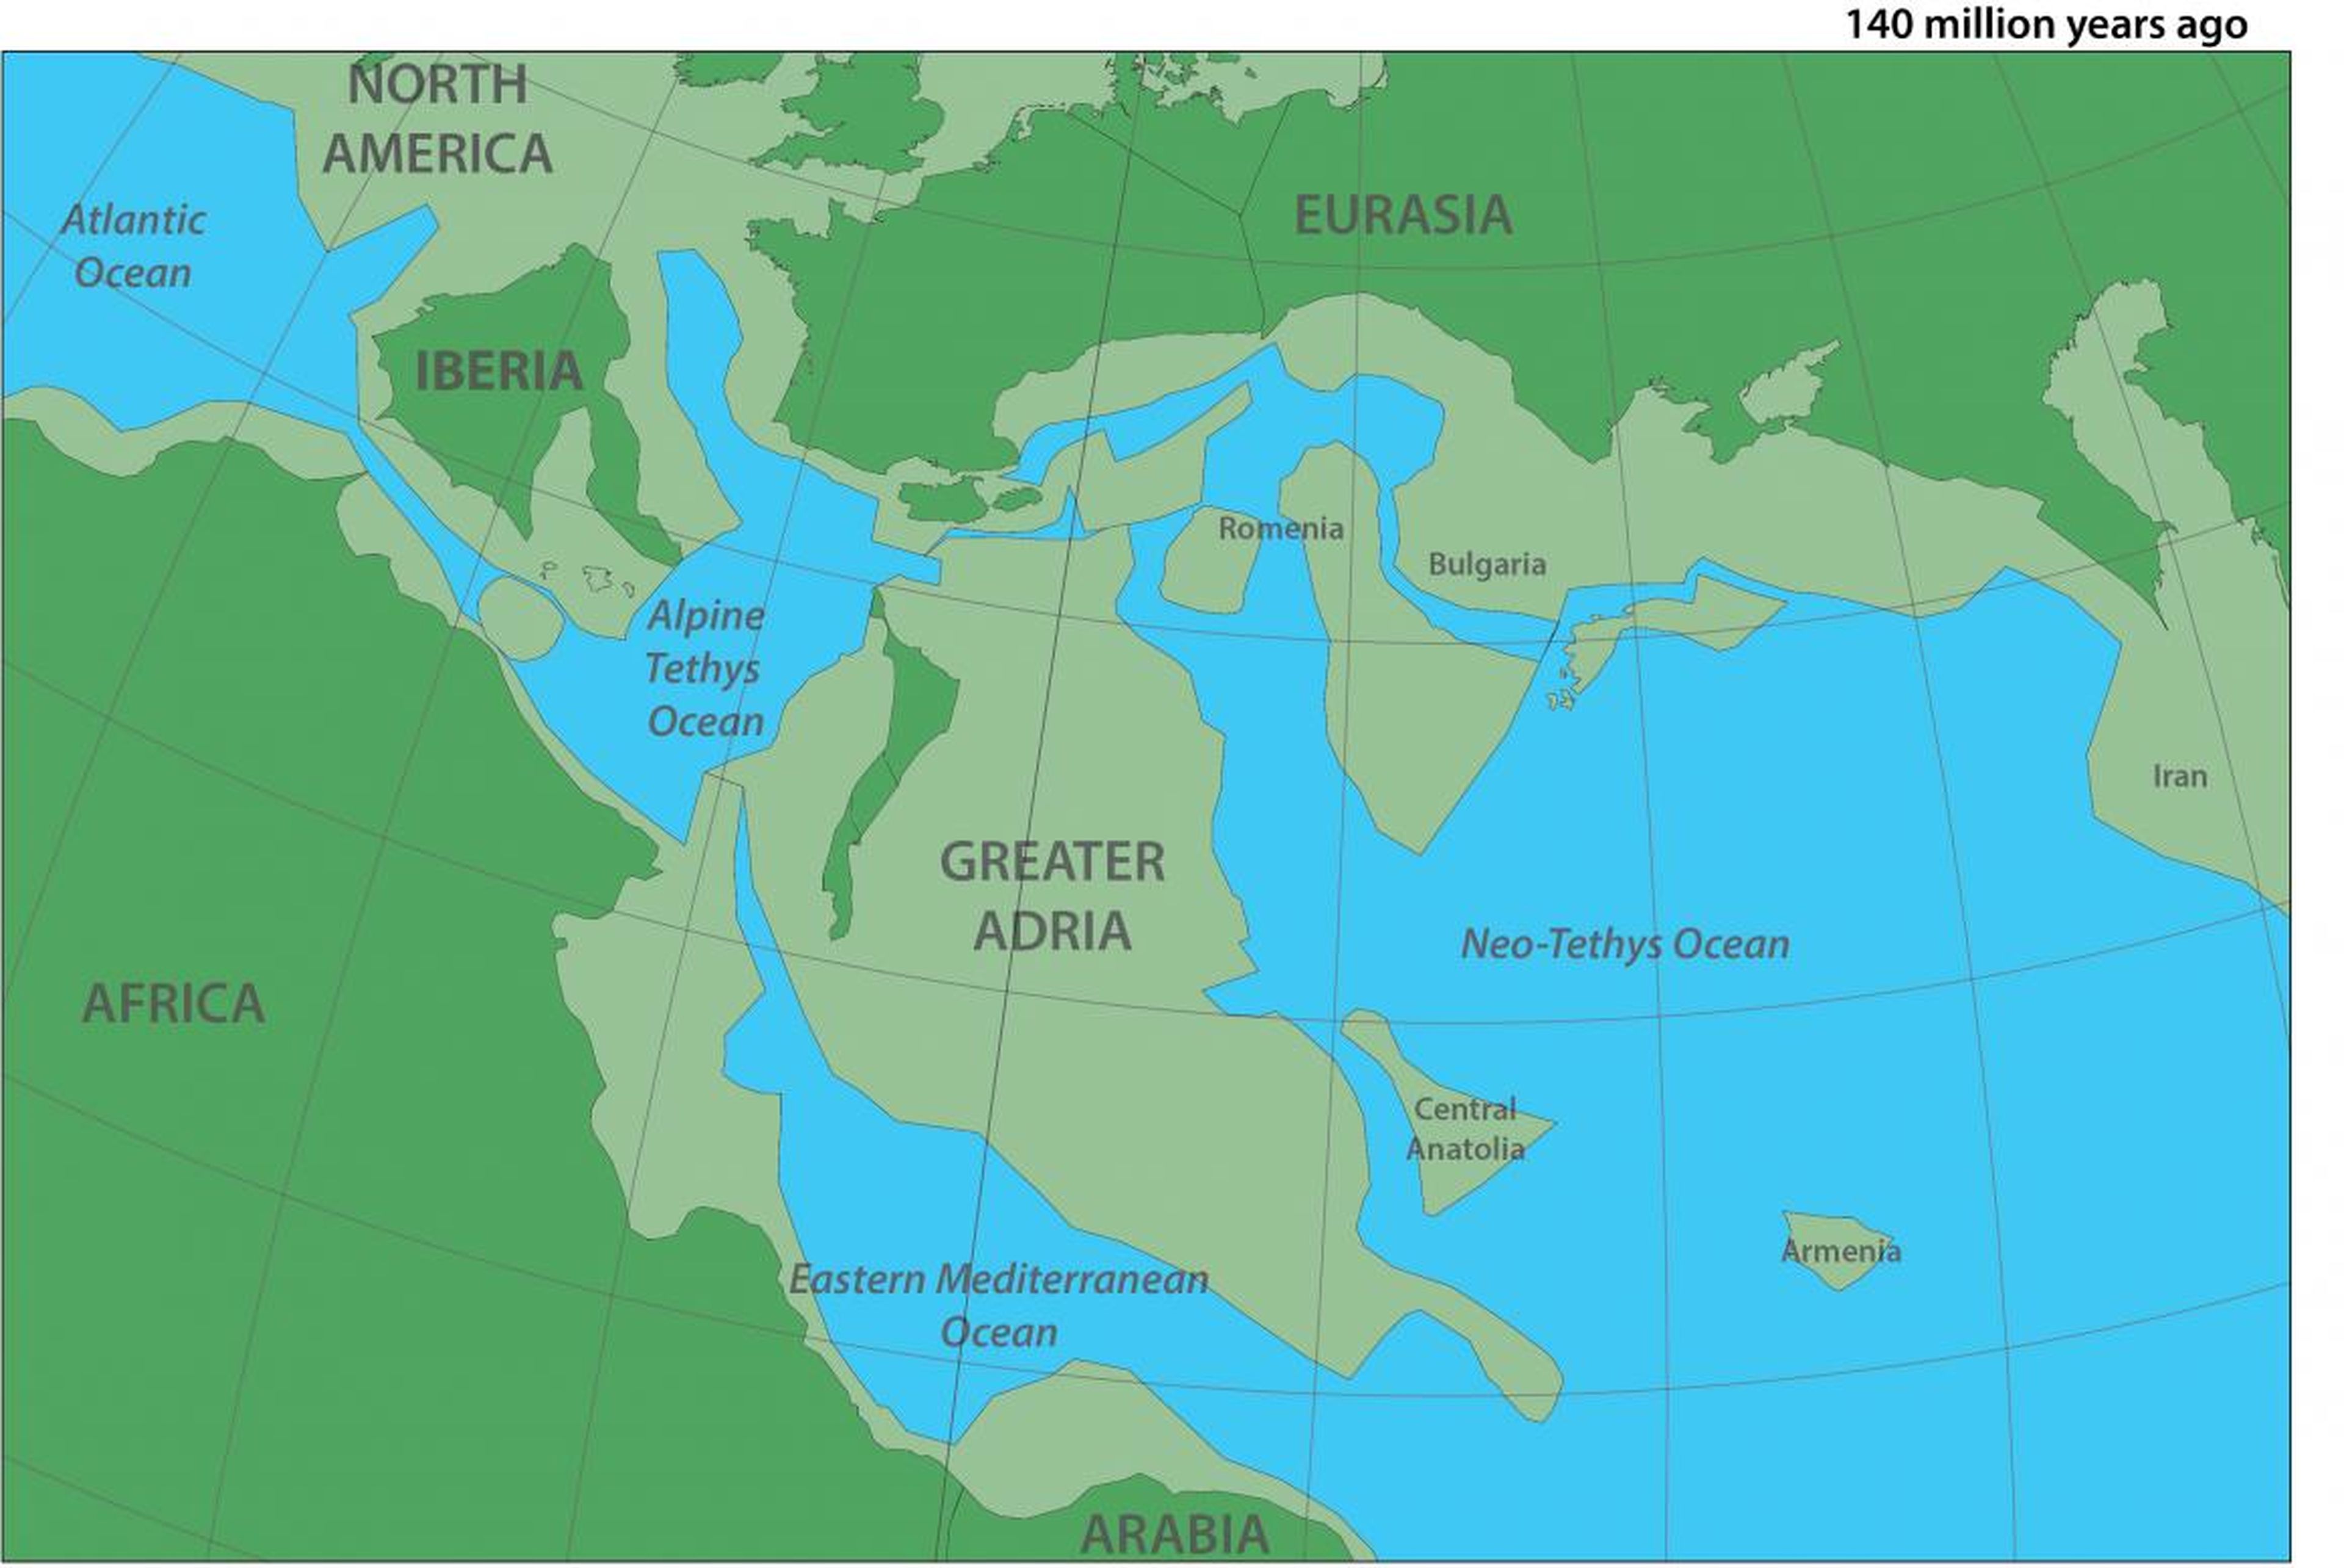 Un mapa de dónde estaba el continente del Gran Adria hace 140 millones de años.